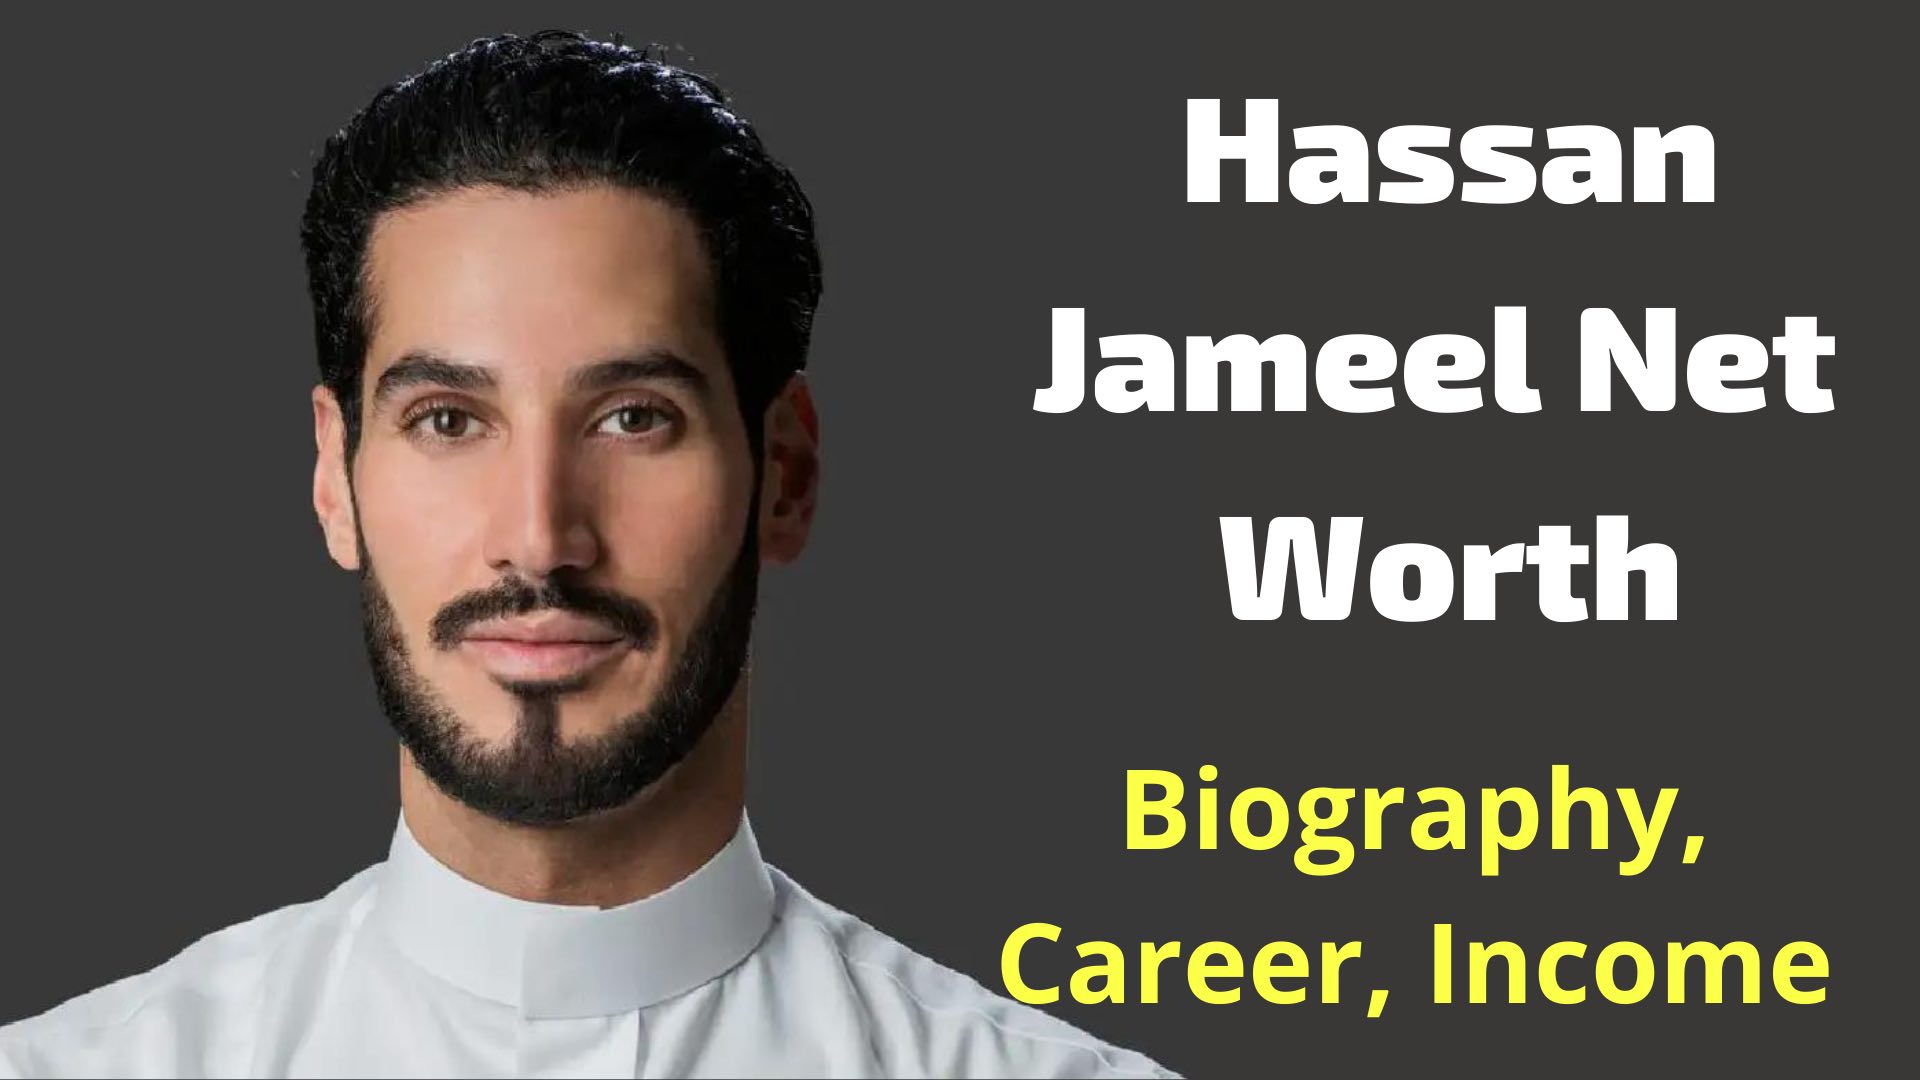 Hassan Jameel